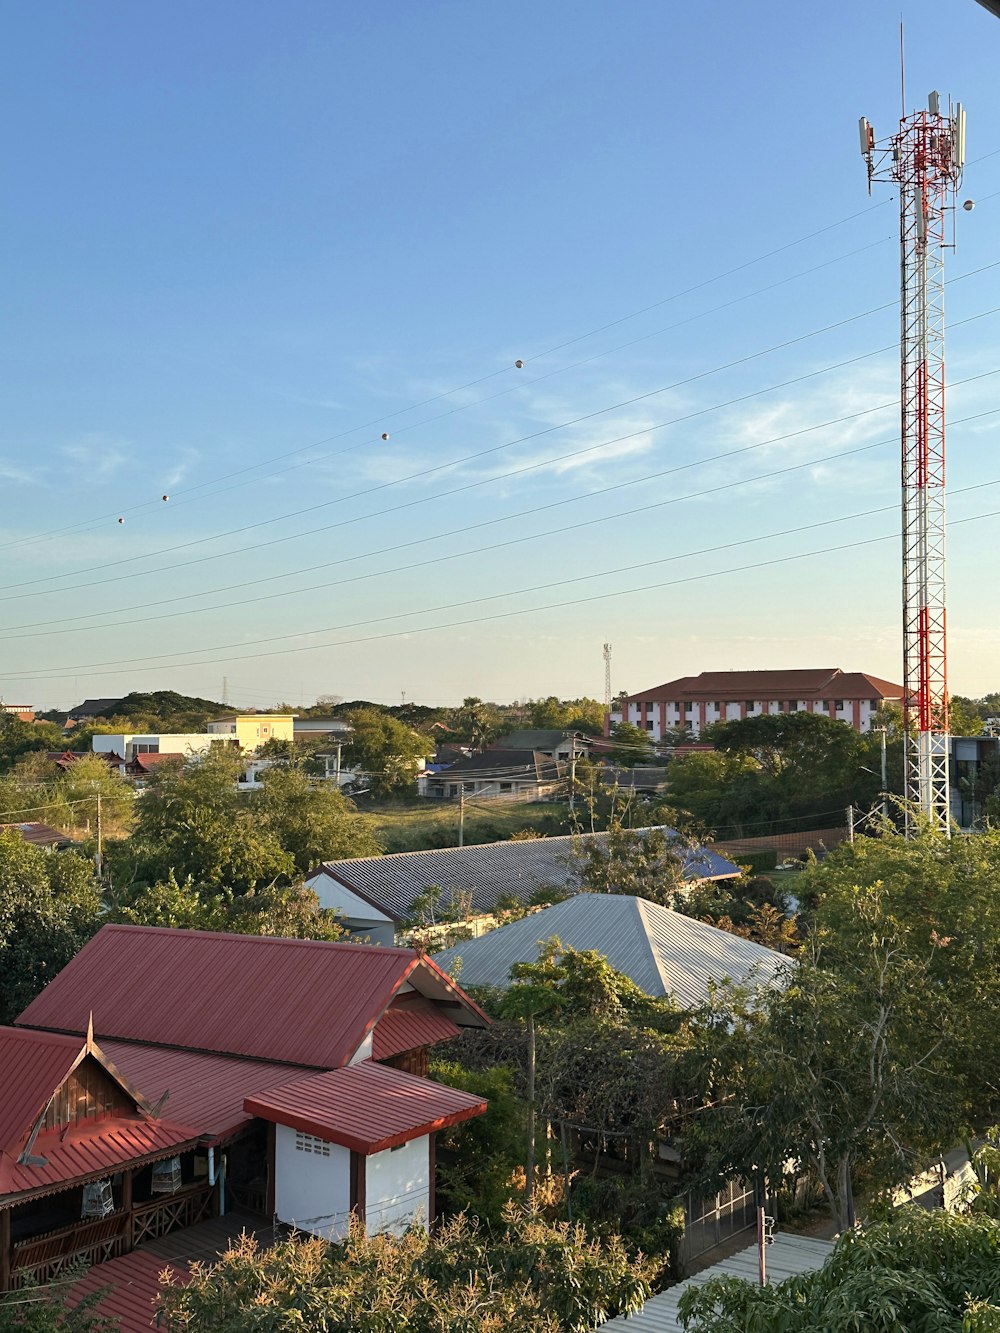 Una veduta aerea di una città con una torre radio sullo sfondo